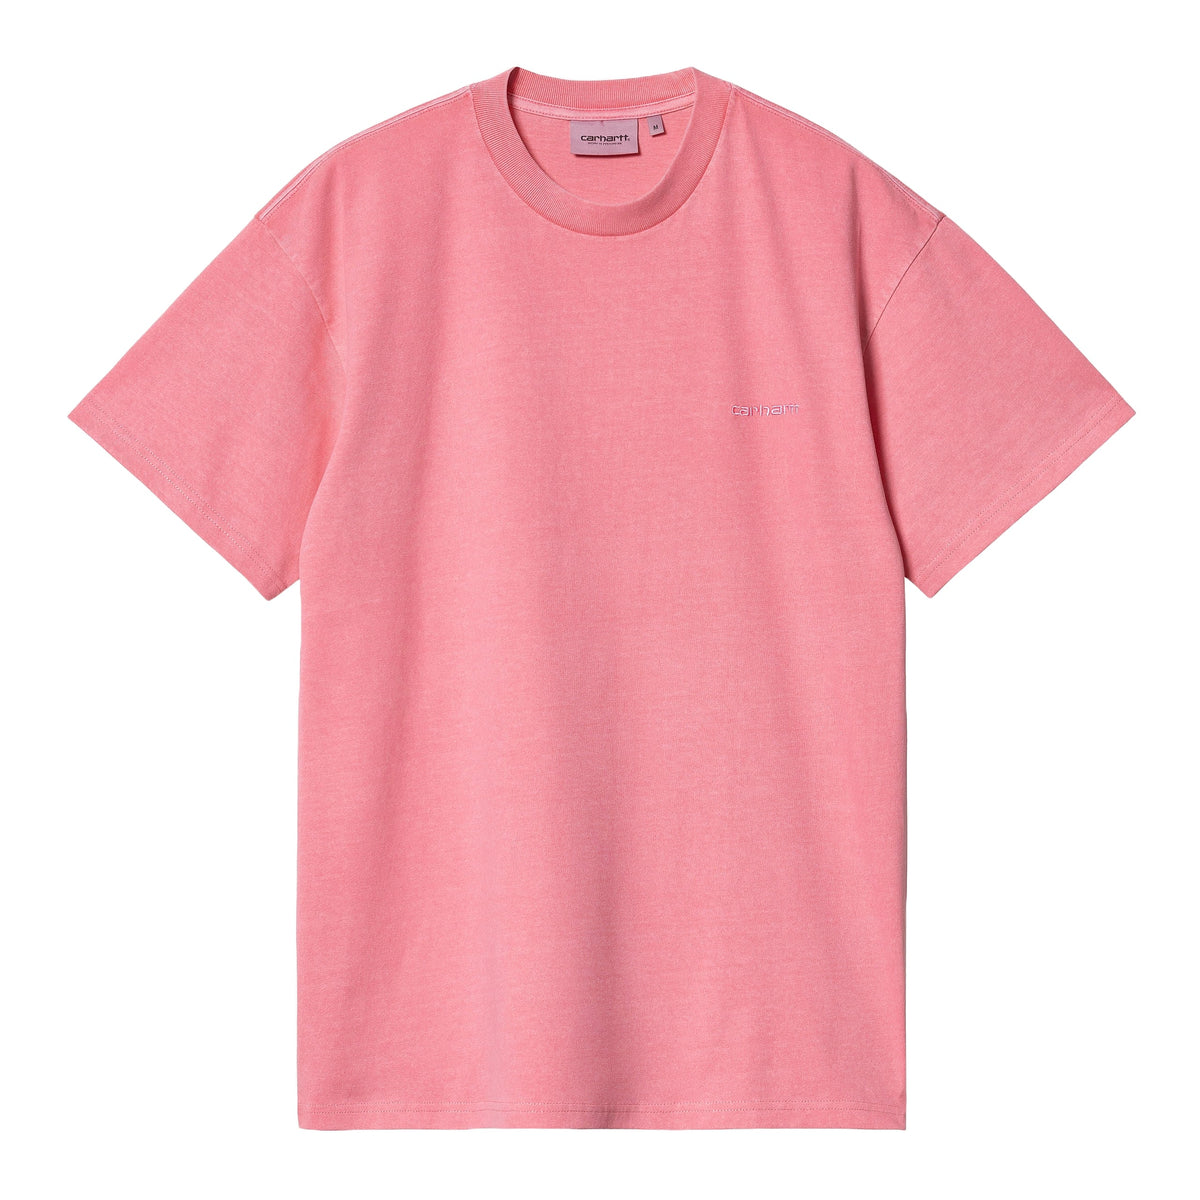 Carhartt Wip Men's T-Shirt Short Sleeve Duster Script Pink